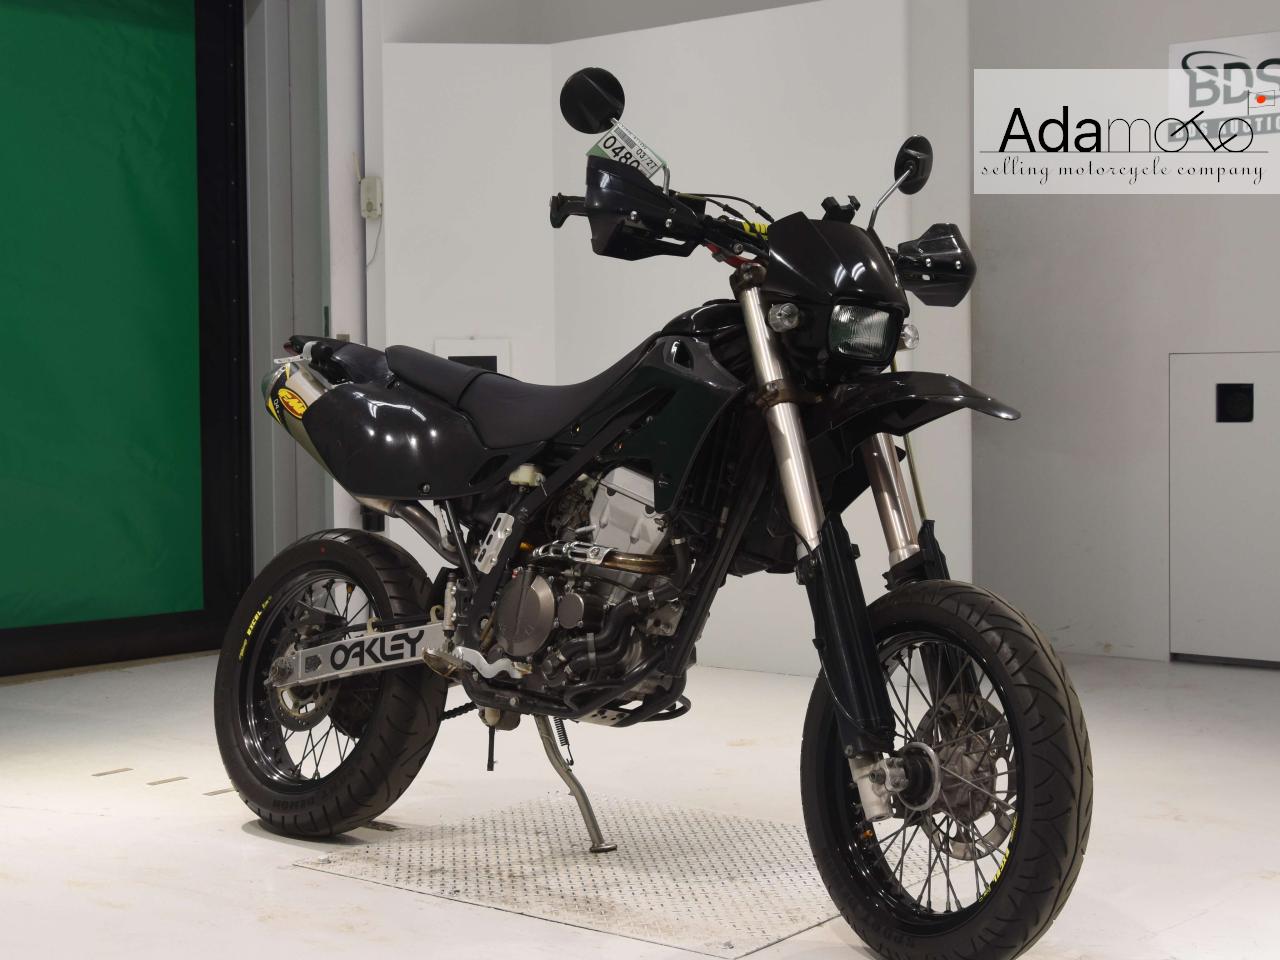 Kawasaki D-TRACKER - Adamoto - Motorcycles from Japan